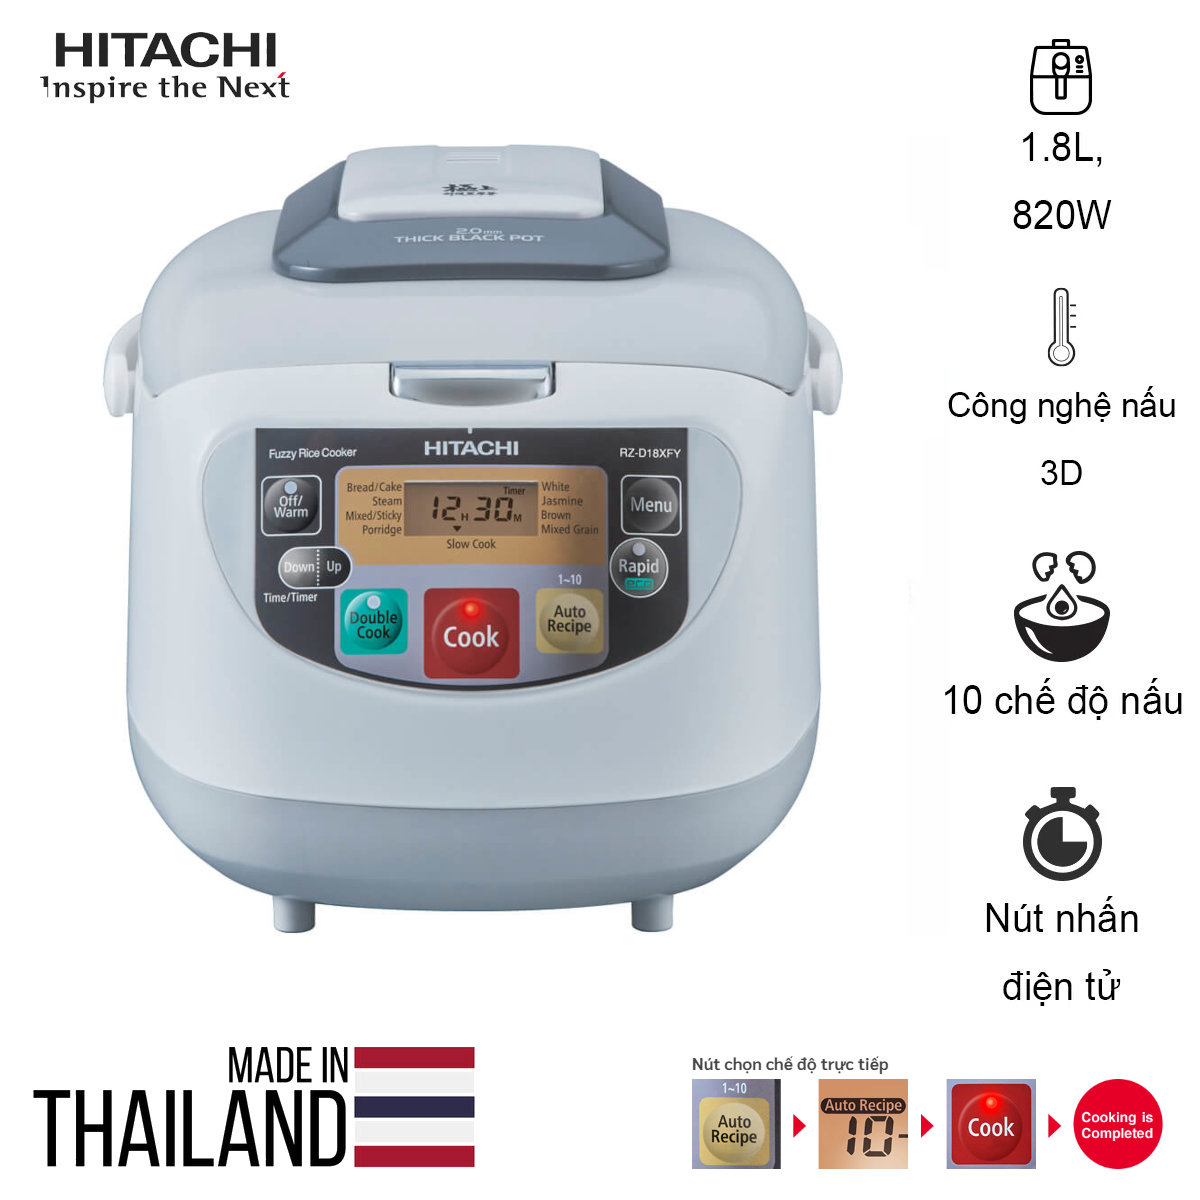 Nồi cơm điện tử Hitachi RZ-D18XFY dung tích 1.8L, chế độ nấu Double Cook, Made in Thailand